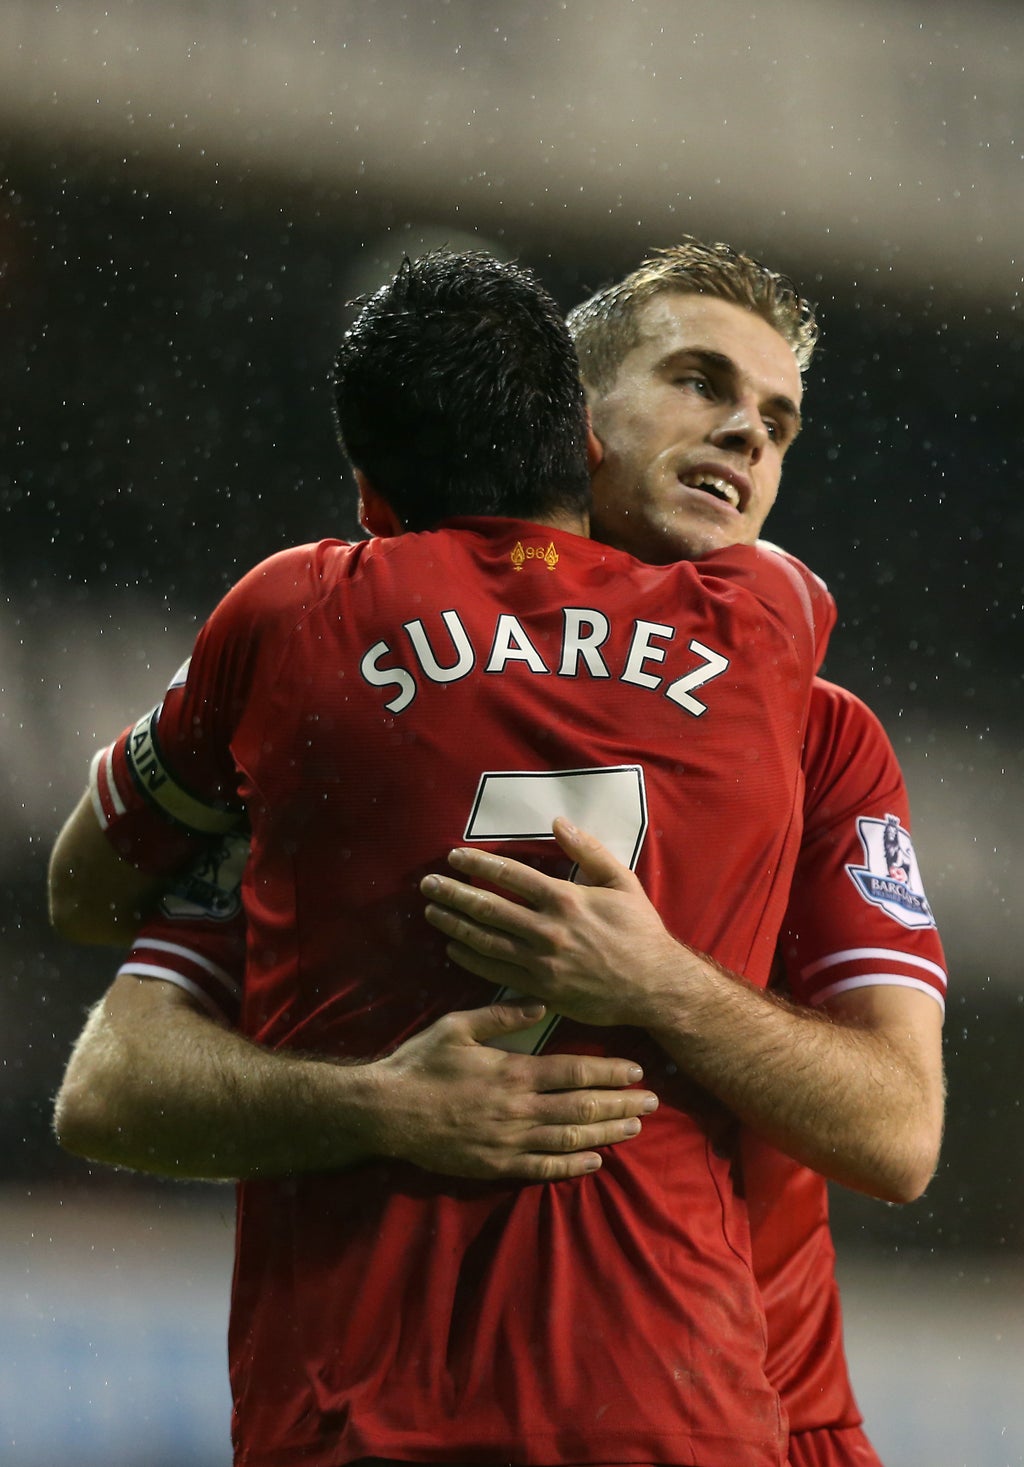 Jordan Henderson: Luis Suarez’s contribution to Liverpool deserves recognition